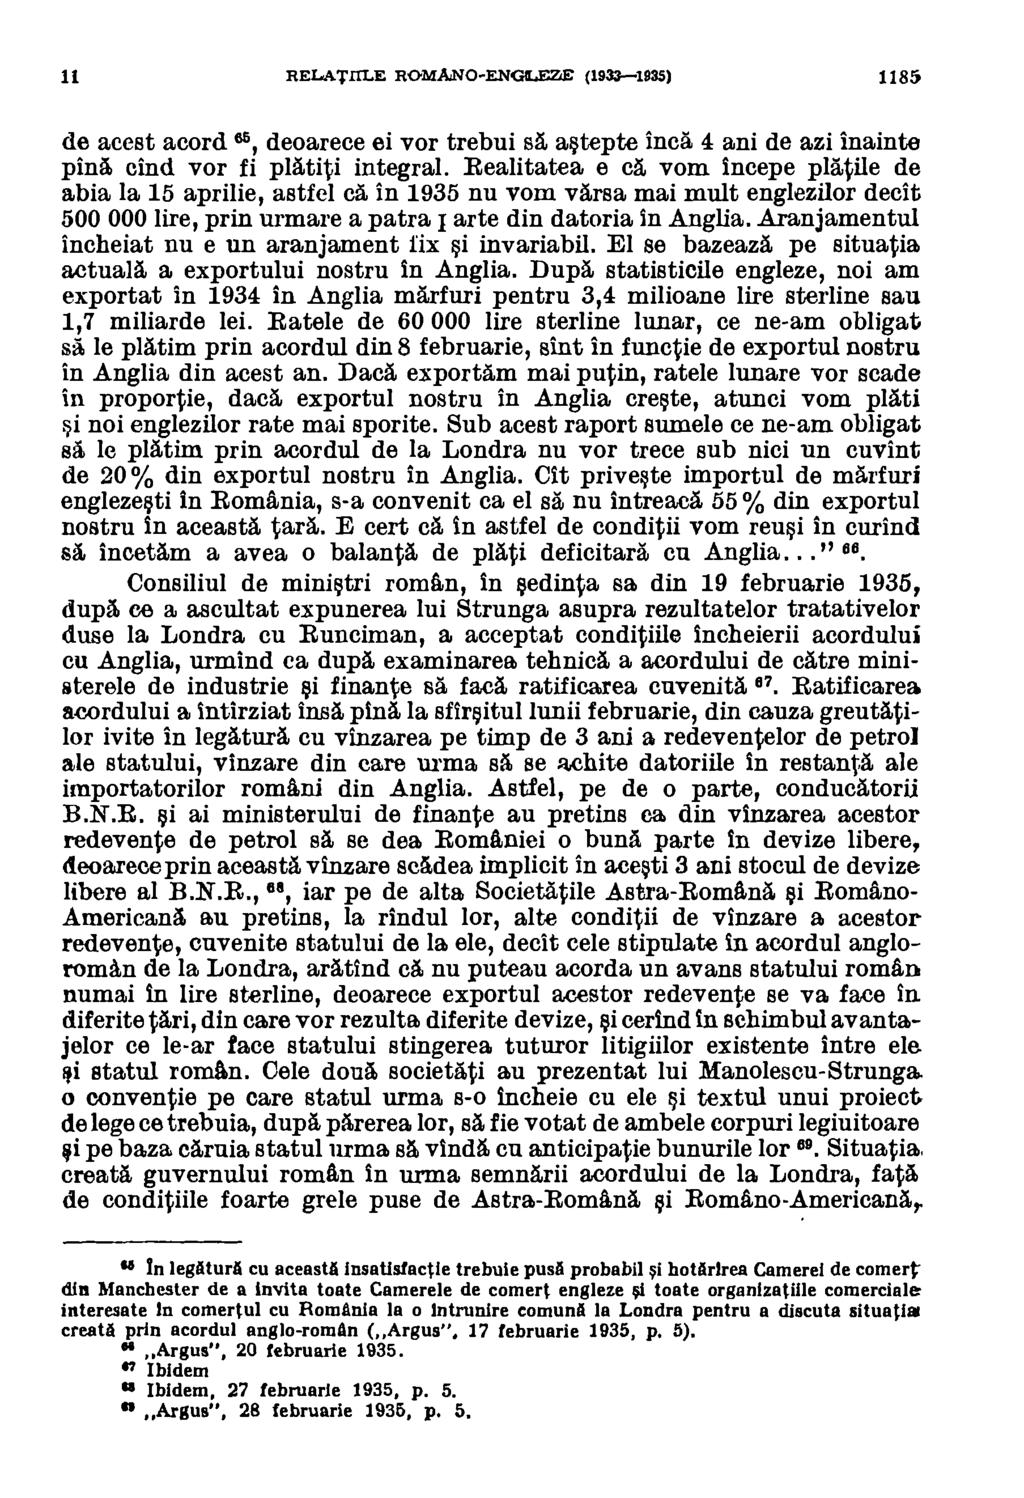 11 RELATI1LE ROMANO-ENGILEZE (1933-1935) 1185 de acest acord 65, deoarece ei vor trebui sa astepte inca 4 ani de azi inainte pina and vor fi platiti integral.